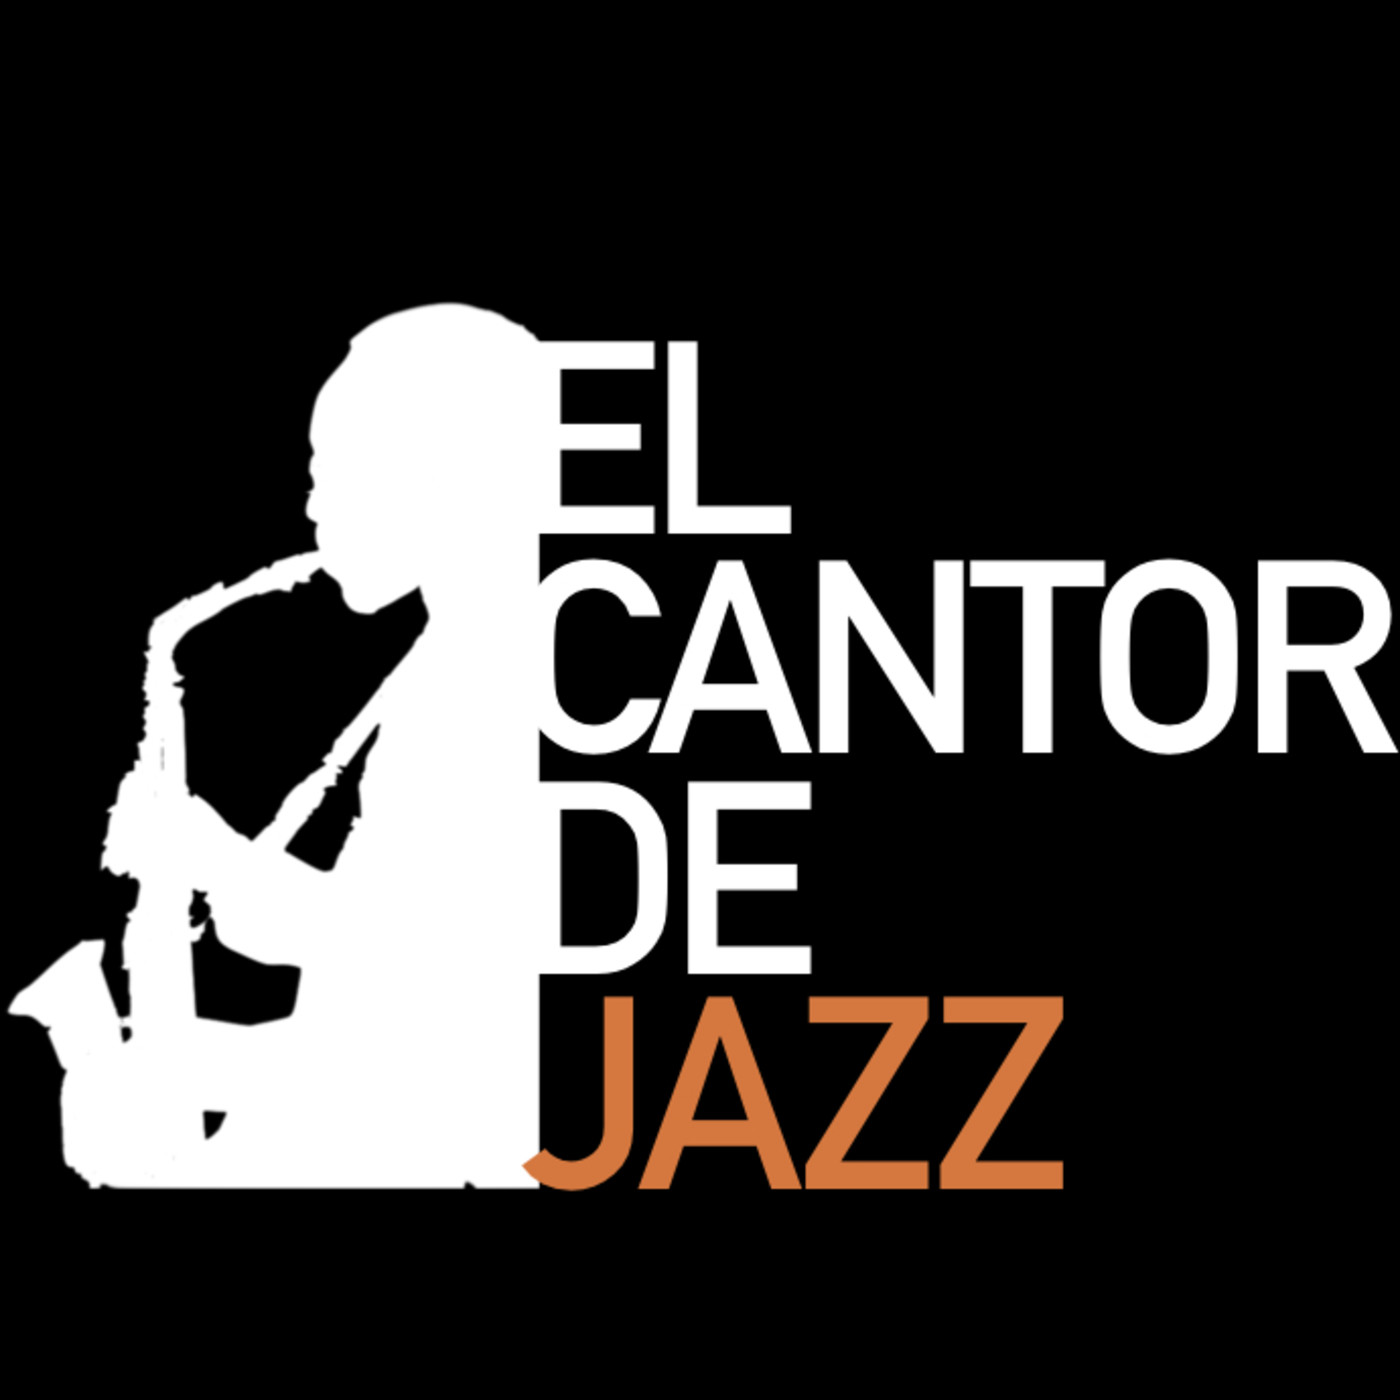 El Cantor de Jazz